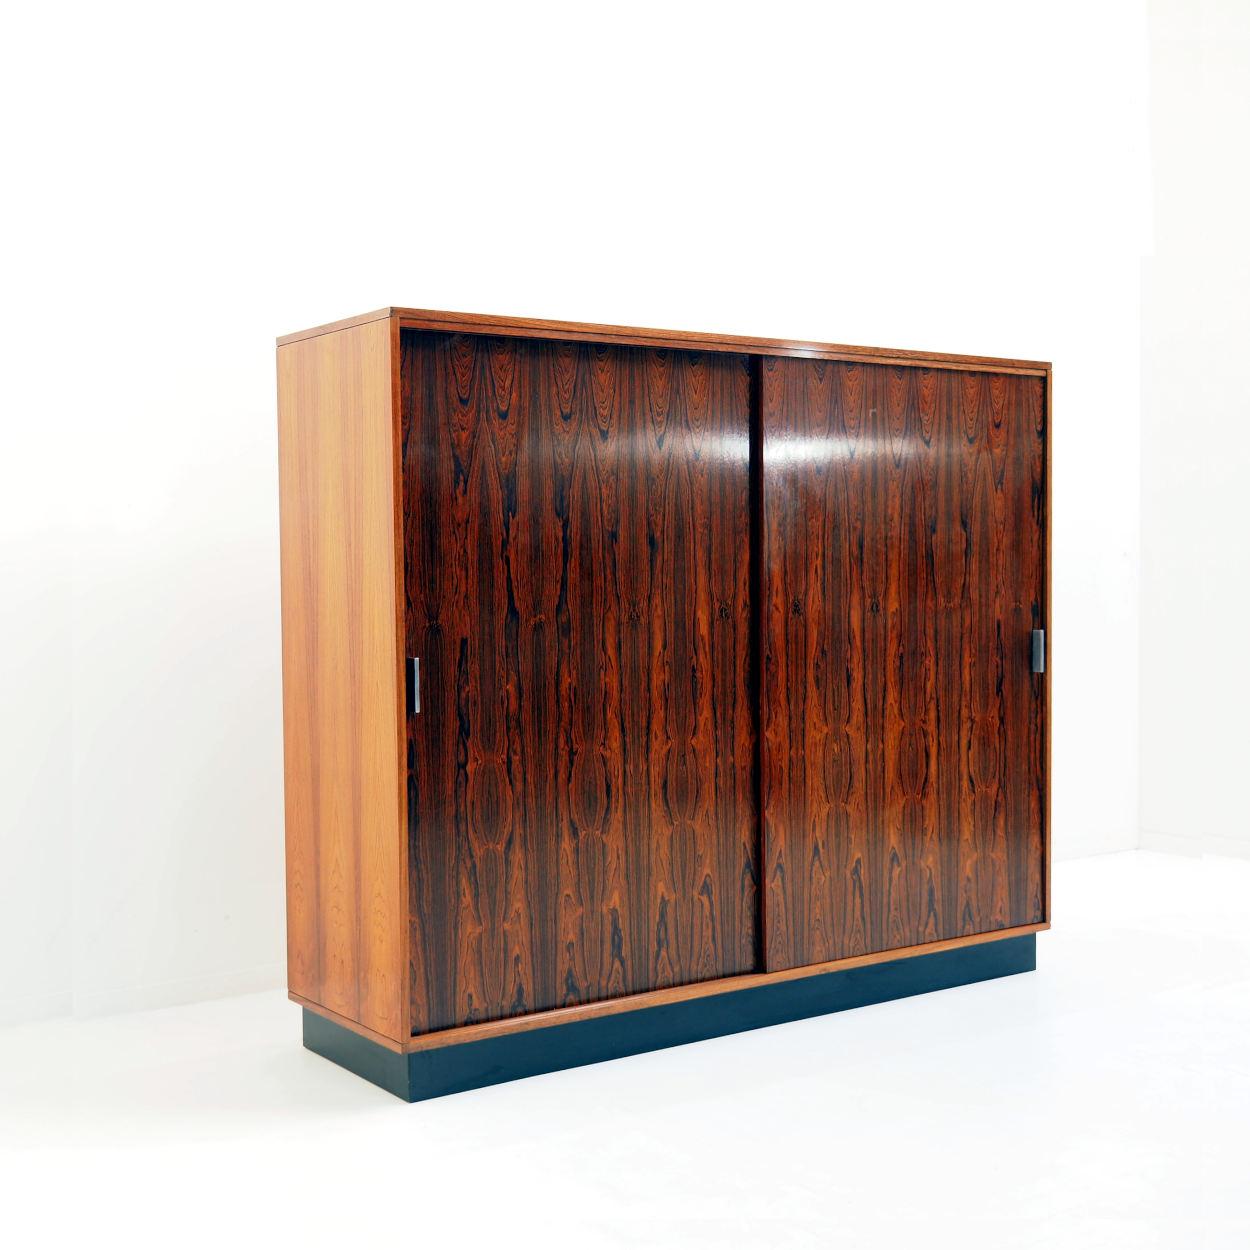 Schöner Kleiderschrank, entworfen vom belgischen Designer Alfred Hendrickx für die Firma Belform. Das Design stammt aus den 1960er Jahren.

Die Türen des Schranks sind aus schönem exotischem dunklem Holz gefertigt.

Der Kleiderschrank besteht